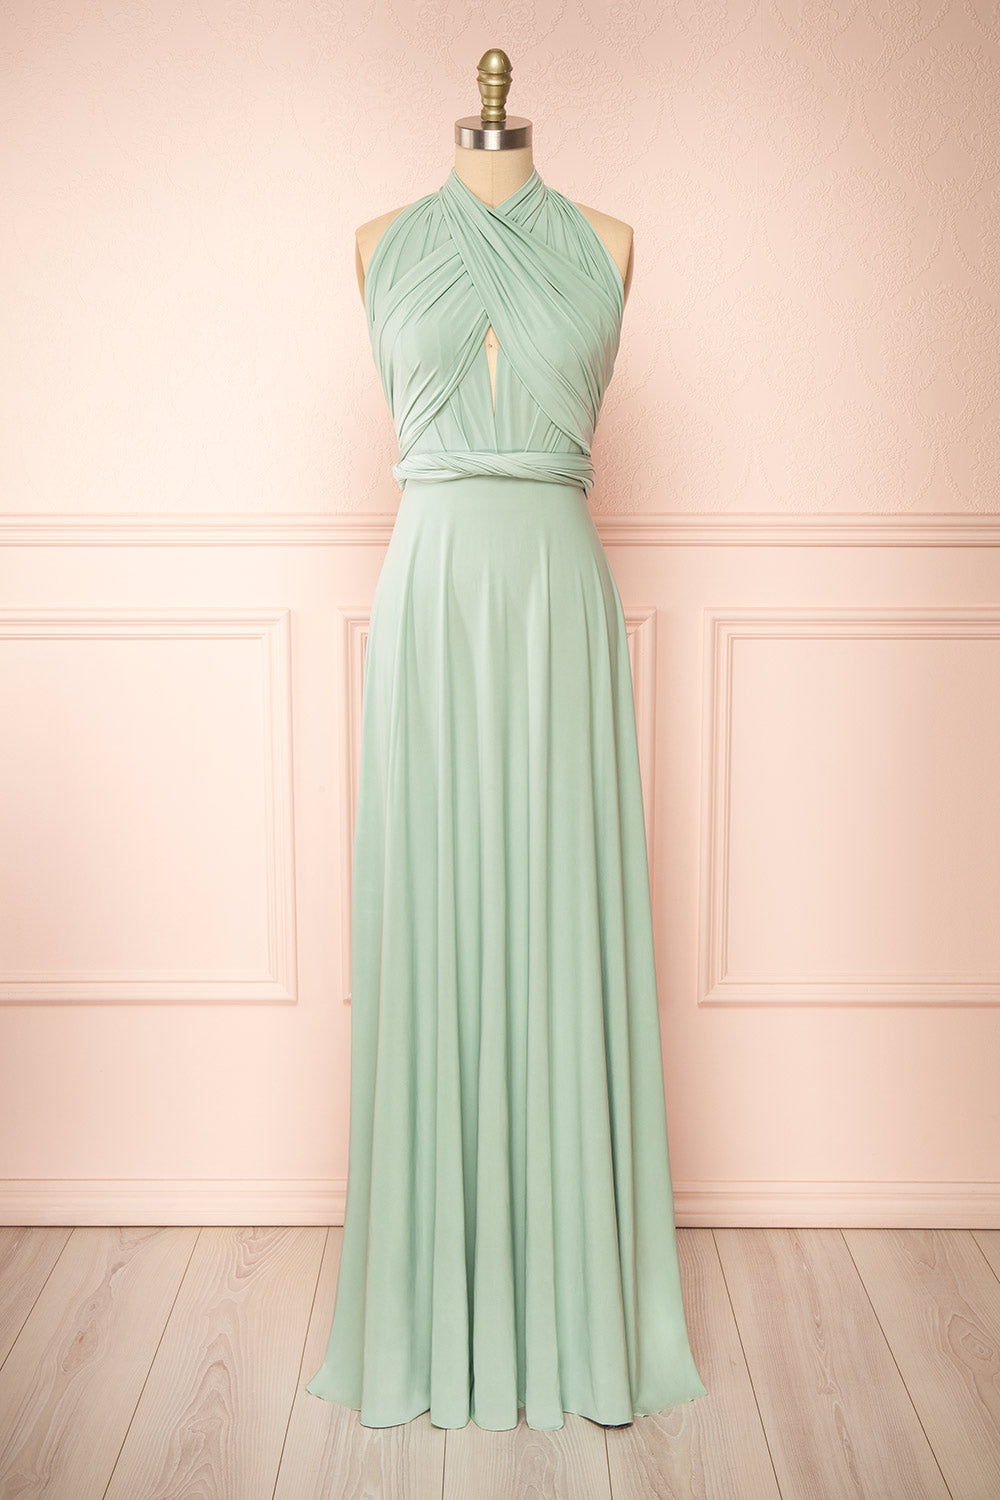 Violaine Sage Convertible Maxi Dress | Boutique 1861 front view 